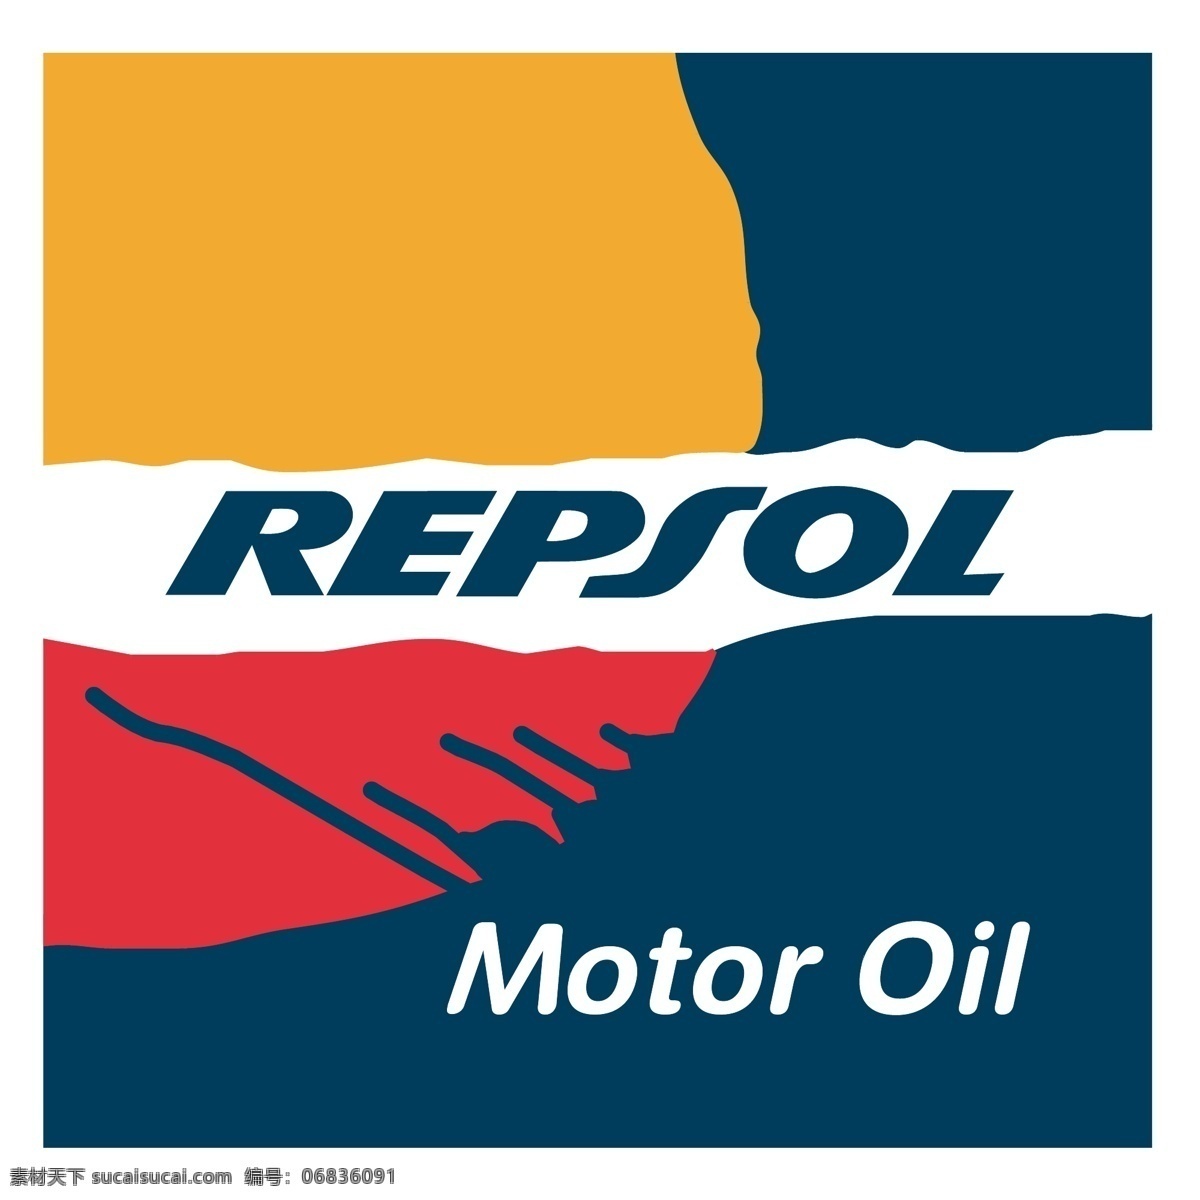 雷普 索尔 机油 标识 公司 免费 品牌 品牌标识 商标 矢量标志下载 免费矢量标识 矢量 psd源文件 logo设计